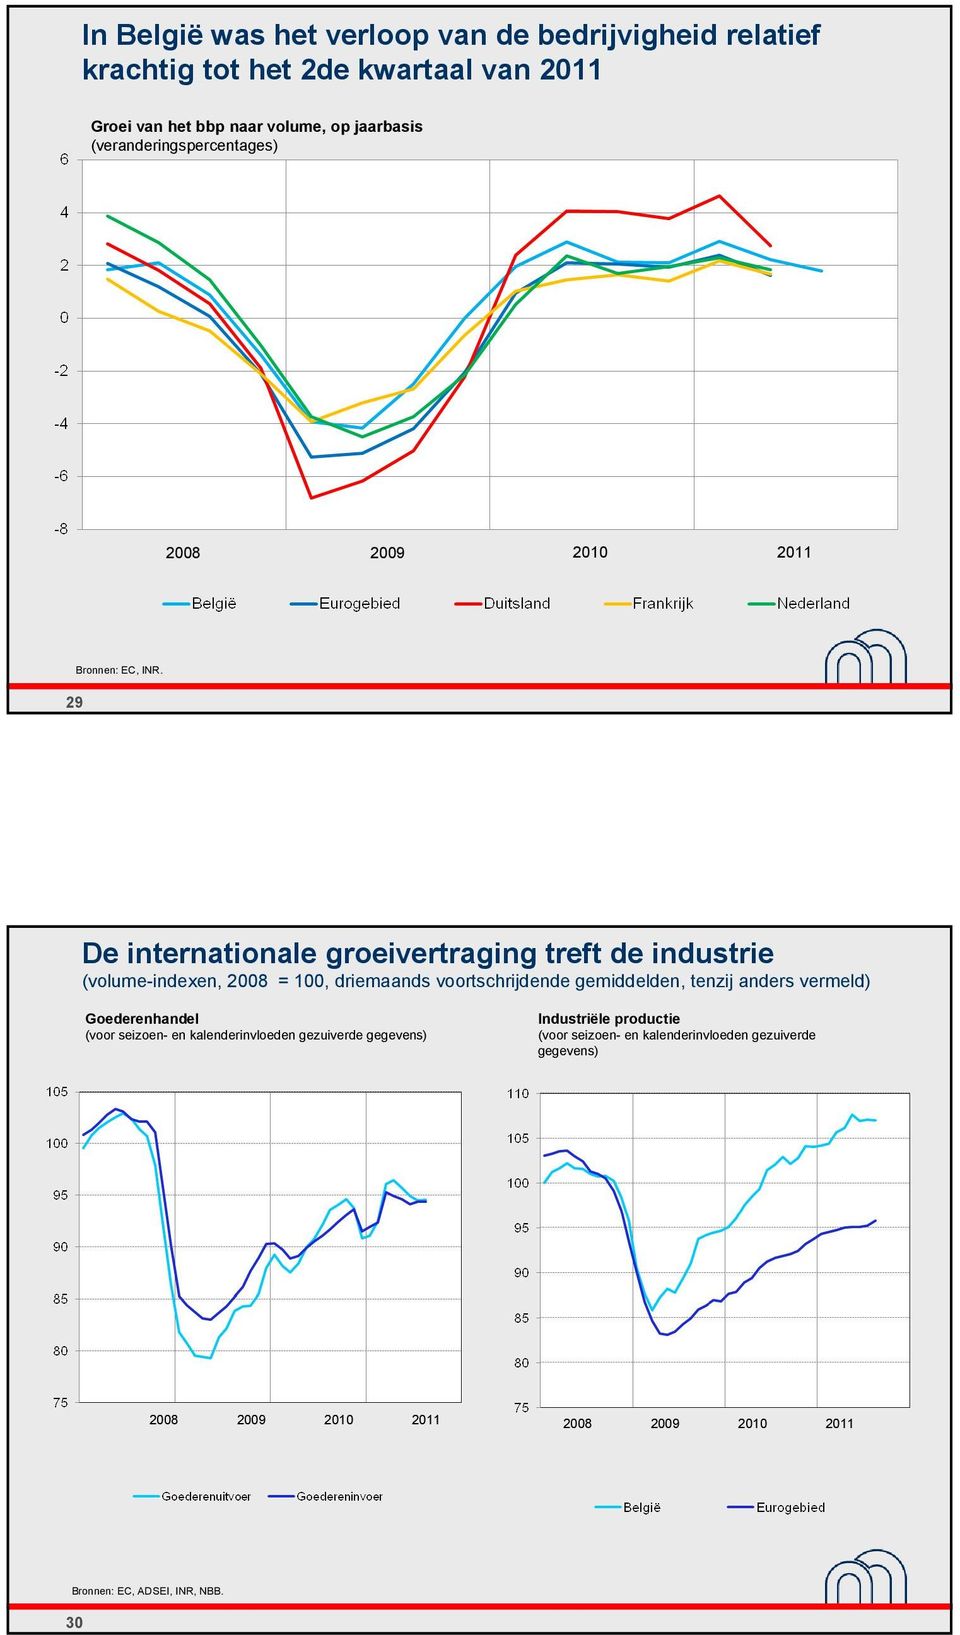 De internationale groeivertraging treft de industrie (volume-indexen, 2008 = 100, driemaands voortschrijdende gemiddelden, tenzij anders